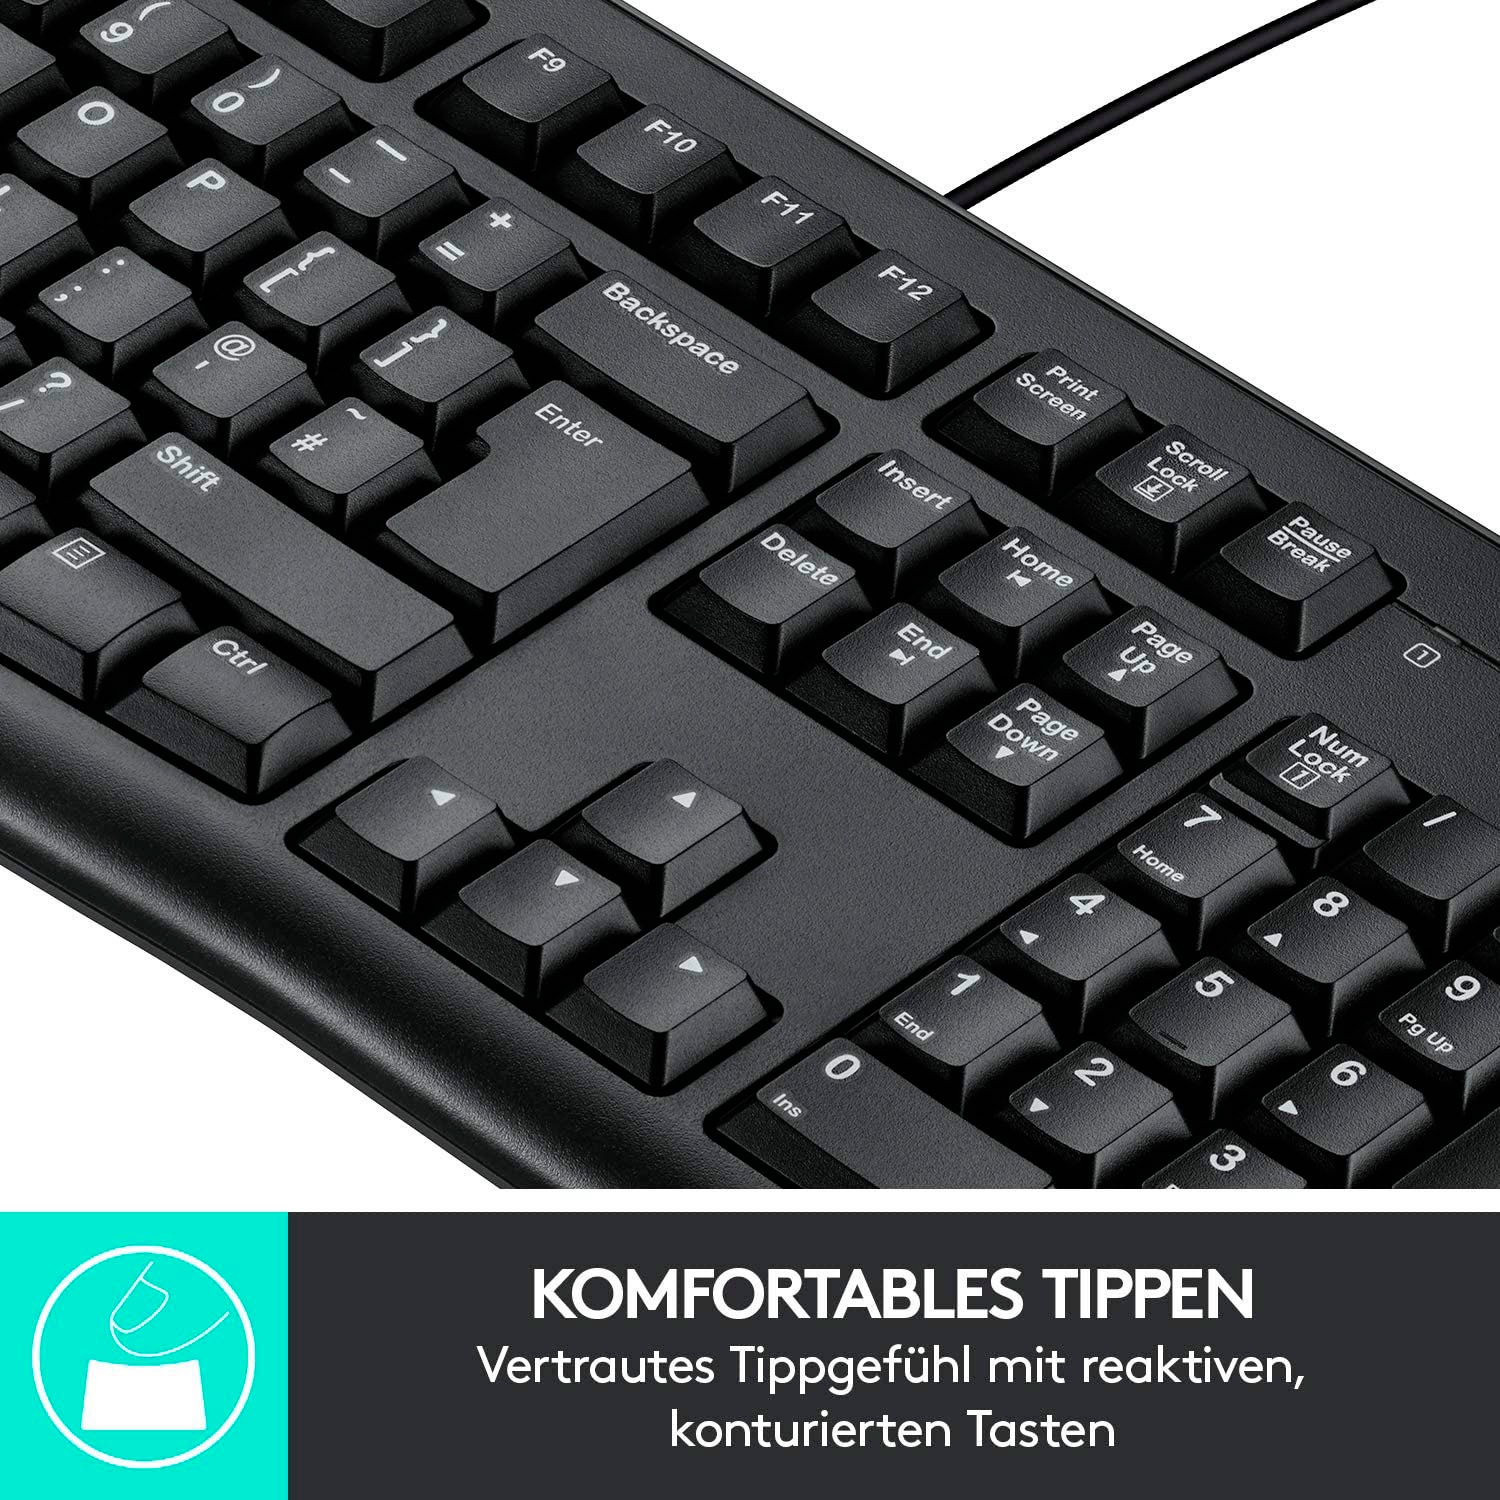 DE-Layout«, - (Ziffernblock), Logitech bei Nummernblock OTTO K120 PC-Tastatur jetzt bestellen »Keyboard